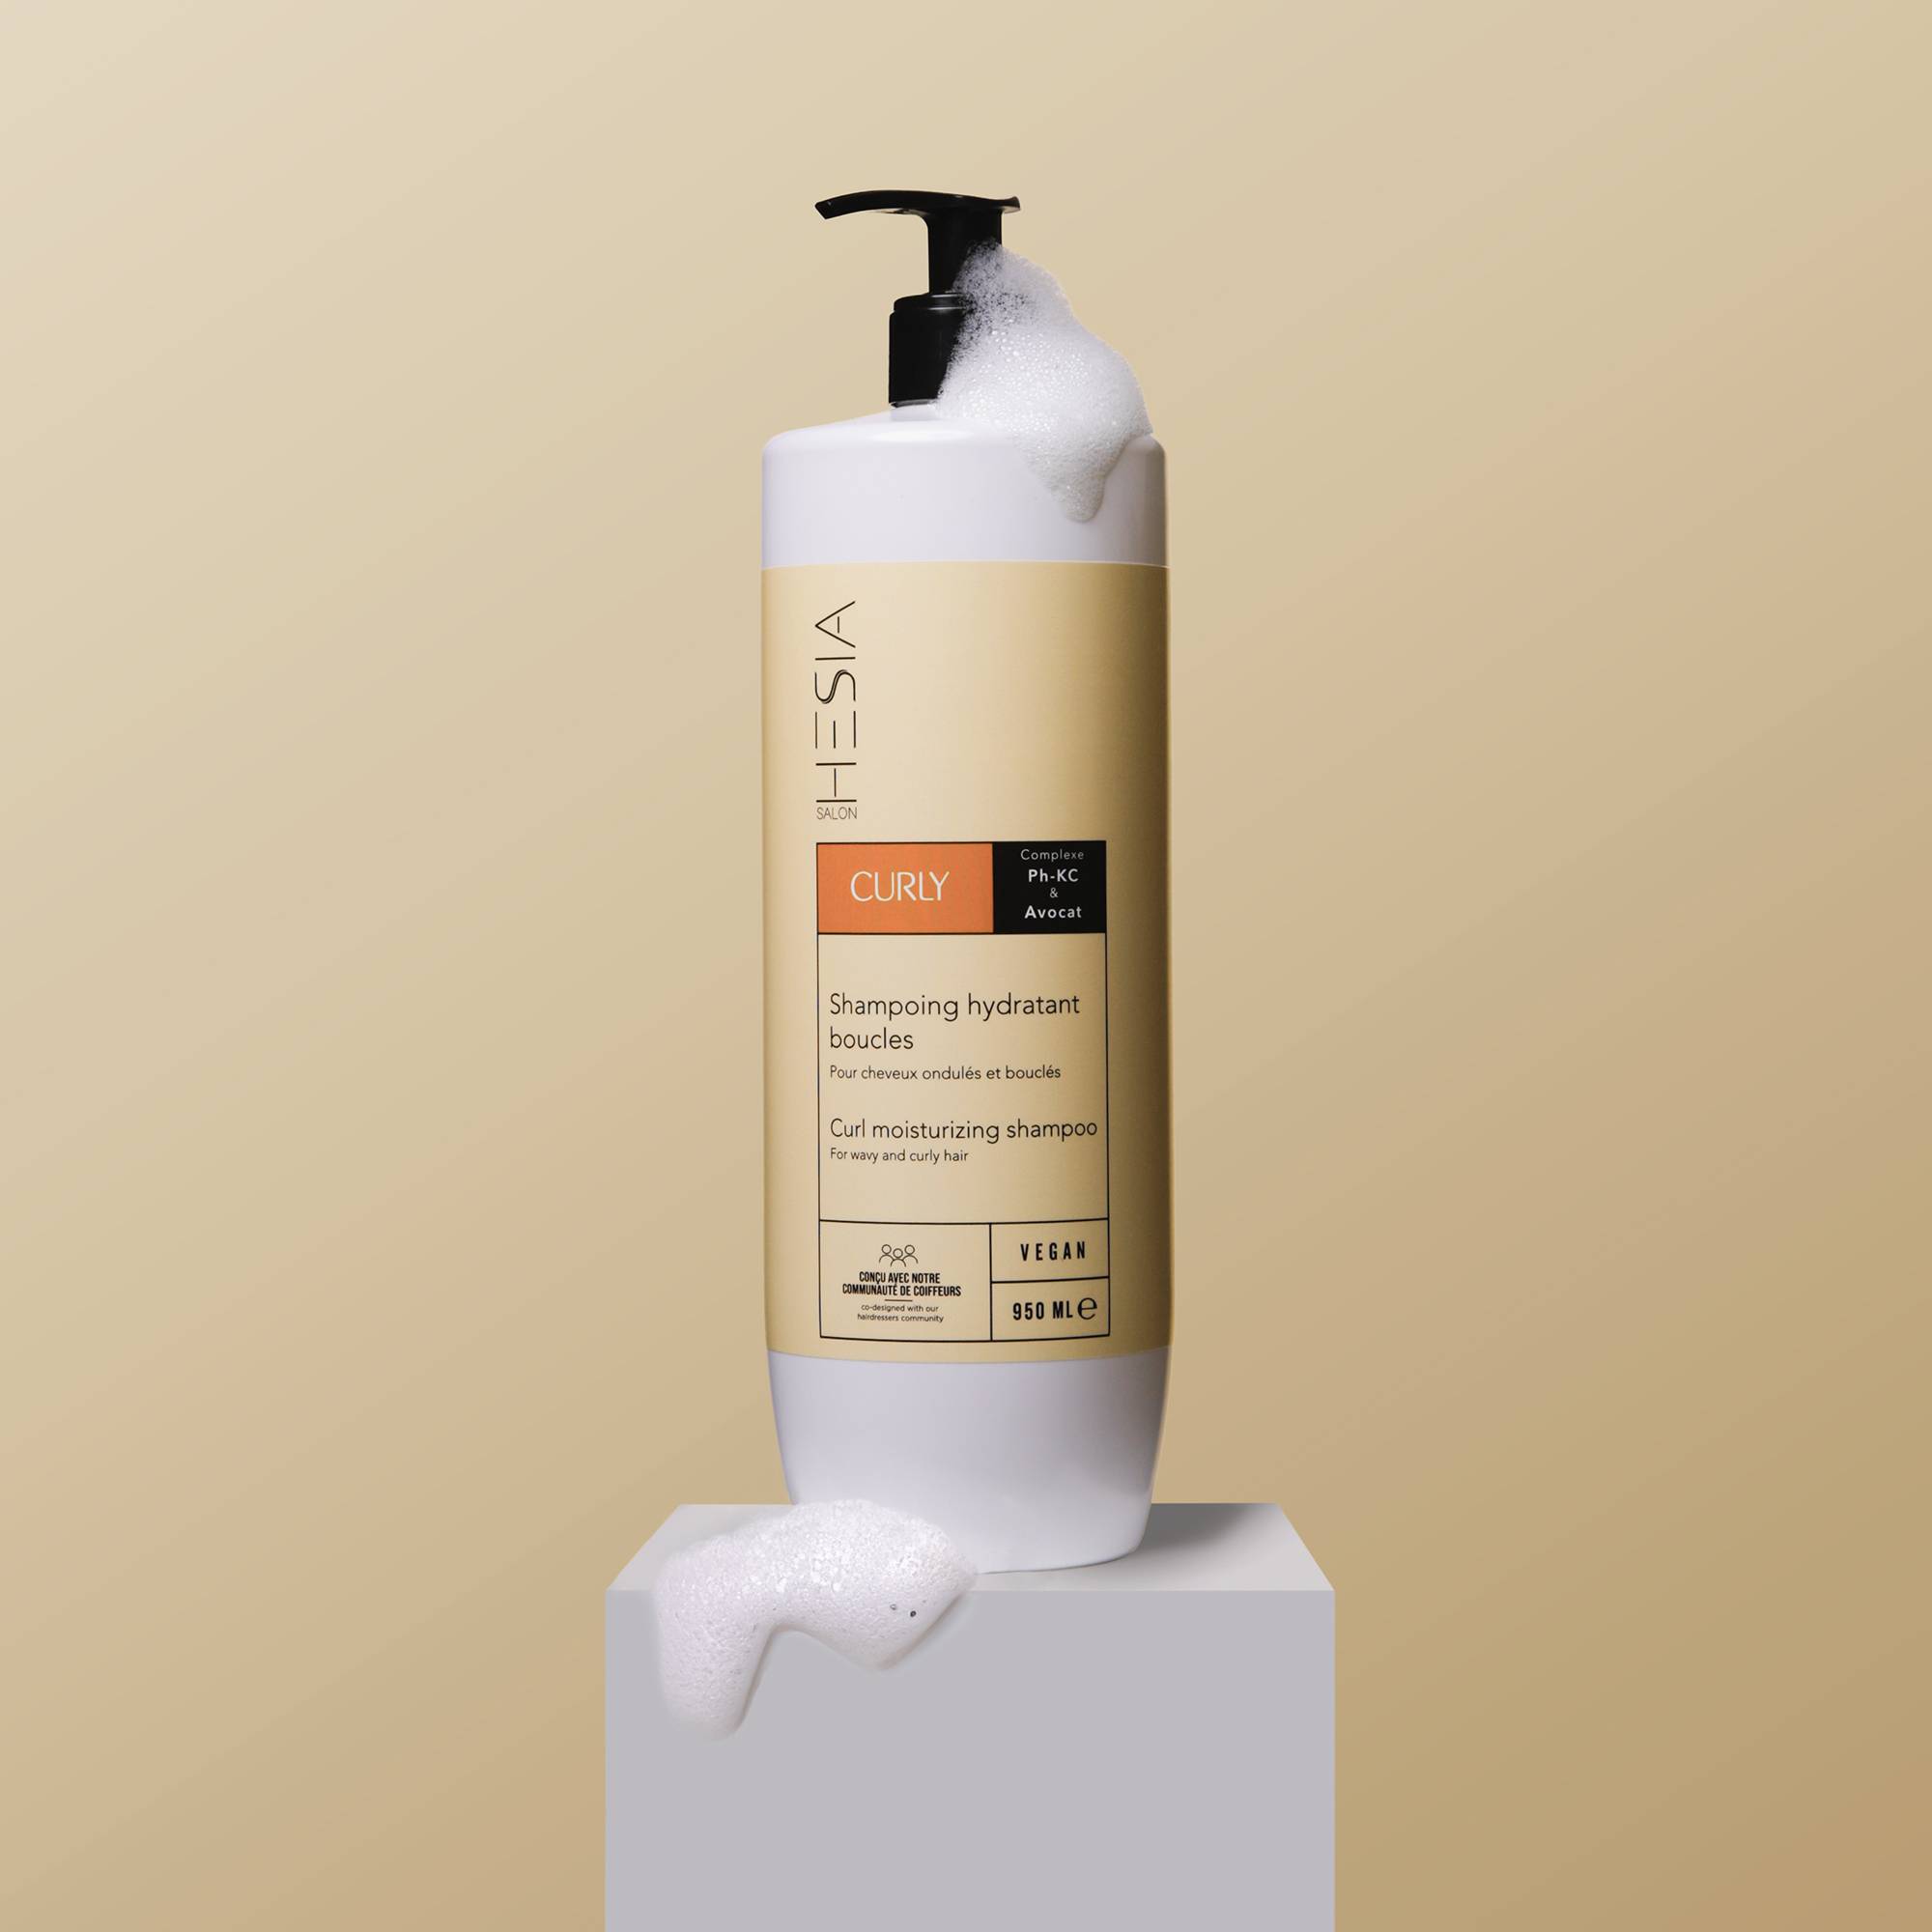 Shampoing hydratant boucles Curly de la marque HESIA Salon Contenance 950ml - 3